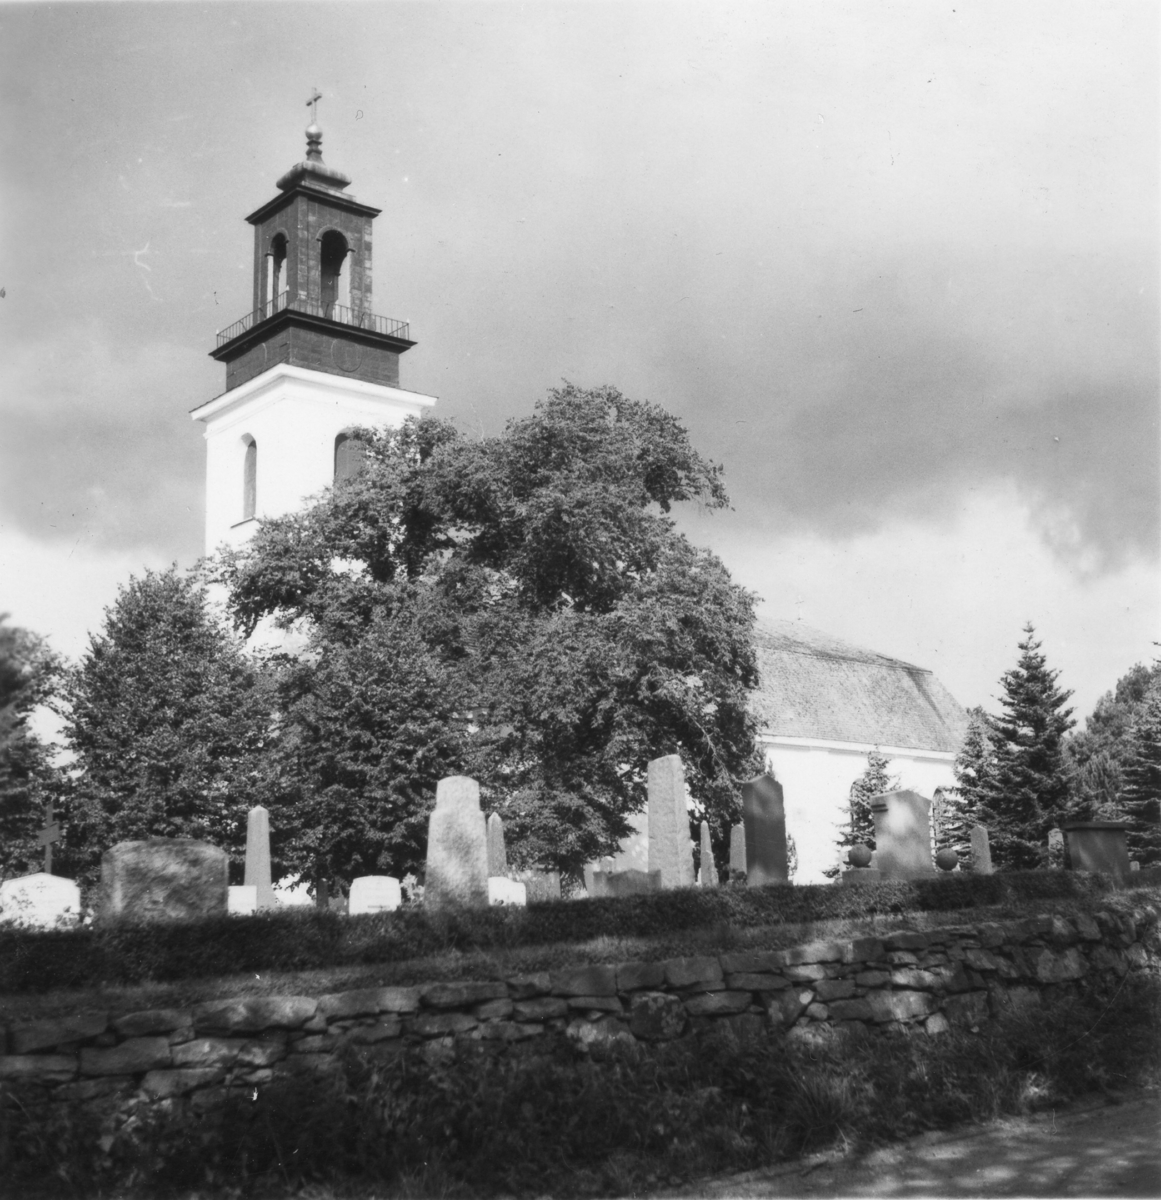 Ölmes kyrka